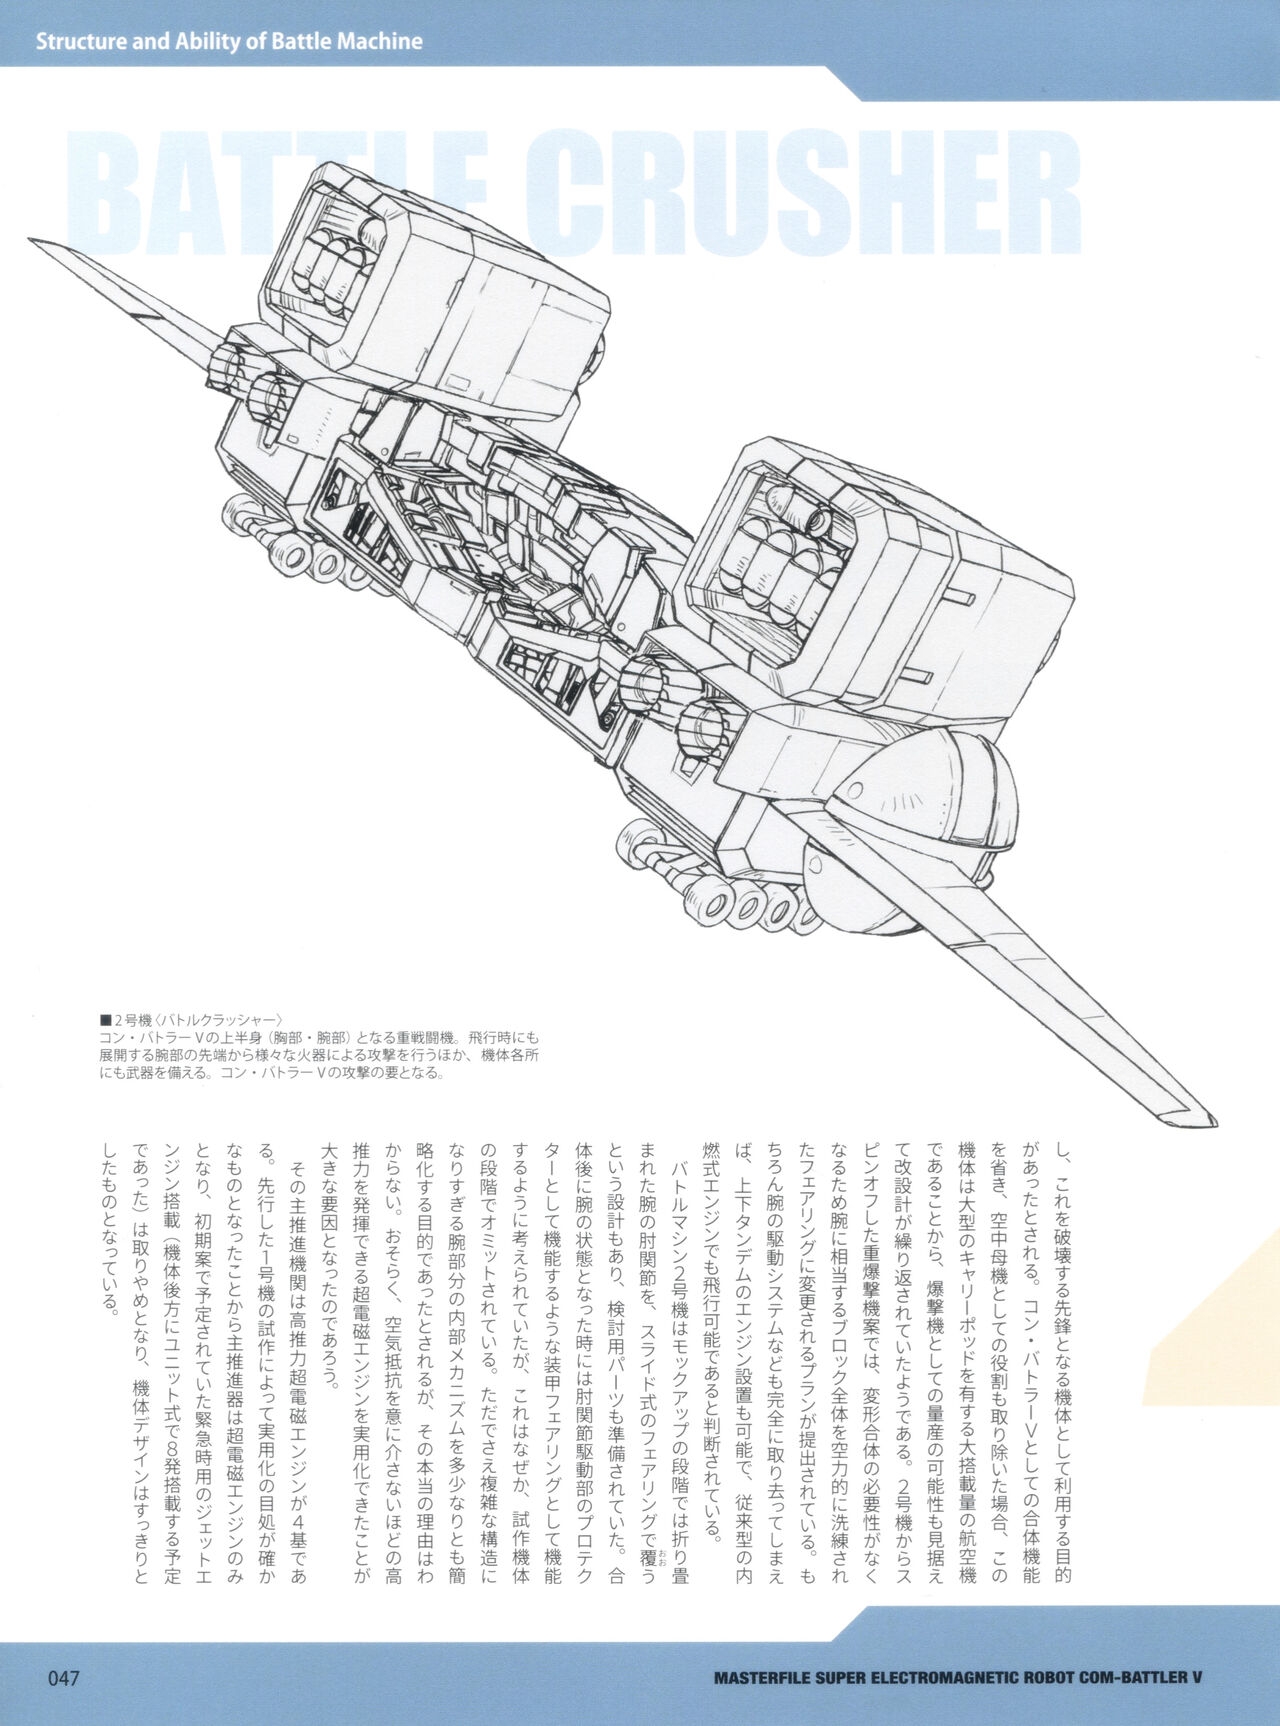 MASTERFILE SUPER ELECTROMAGNETIC ROBOT COM-BATTLER V 54